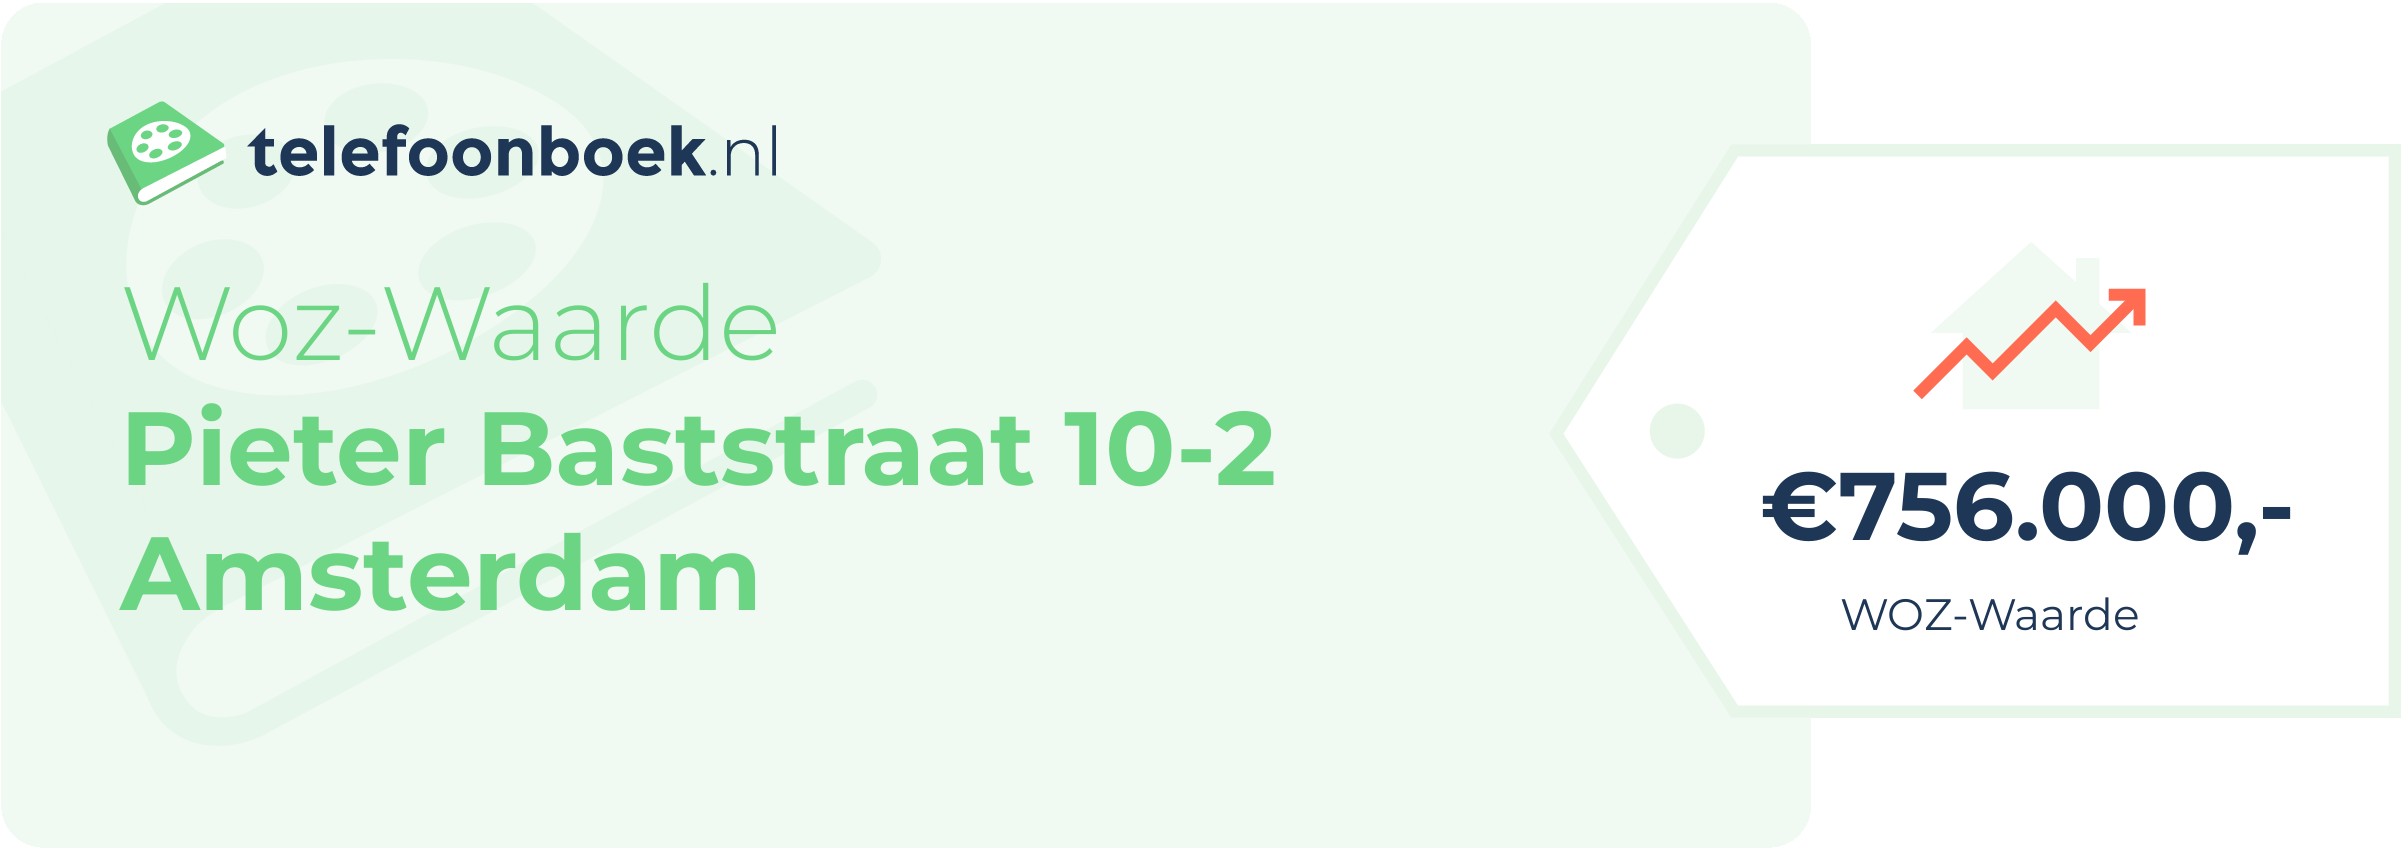 WOZ-waarde Pieter Baststraat 10-2 Amsterdam